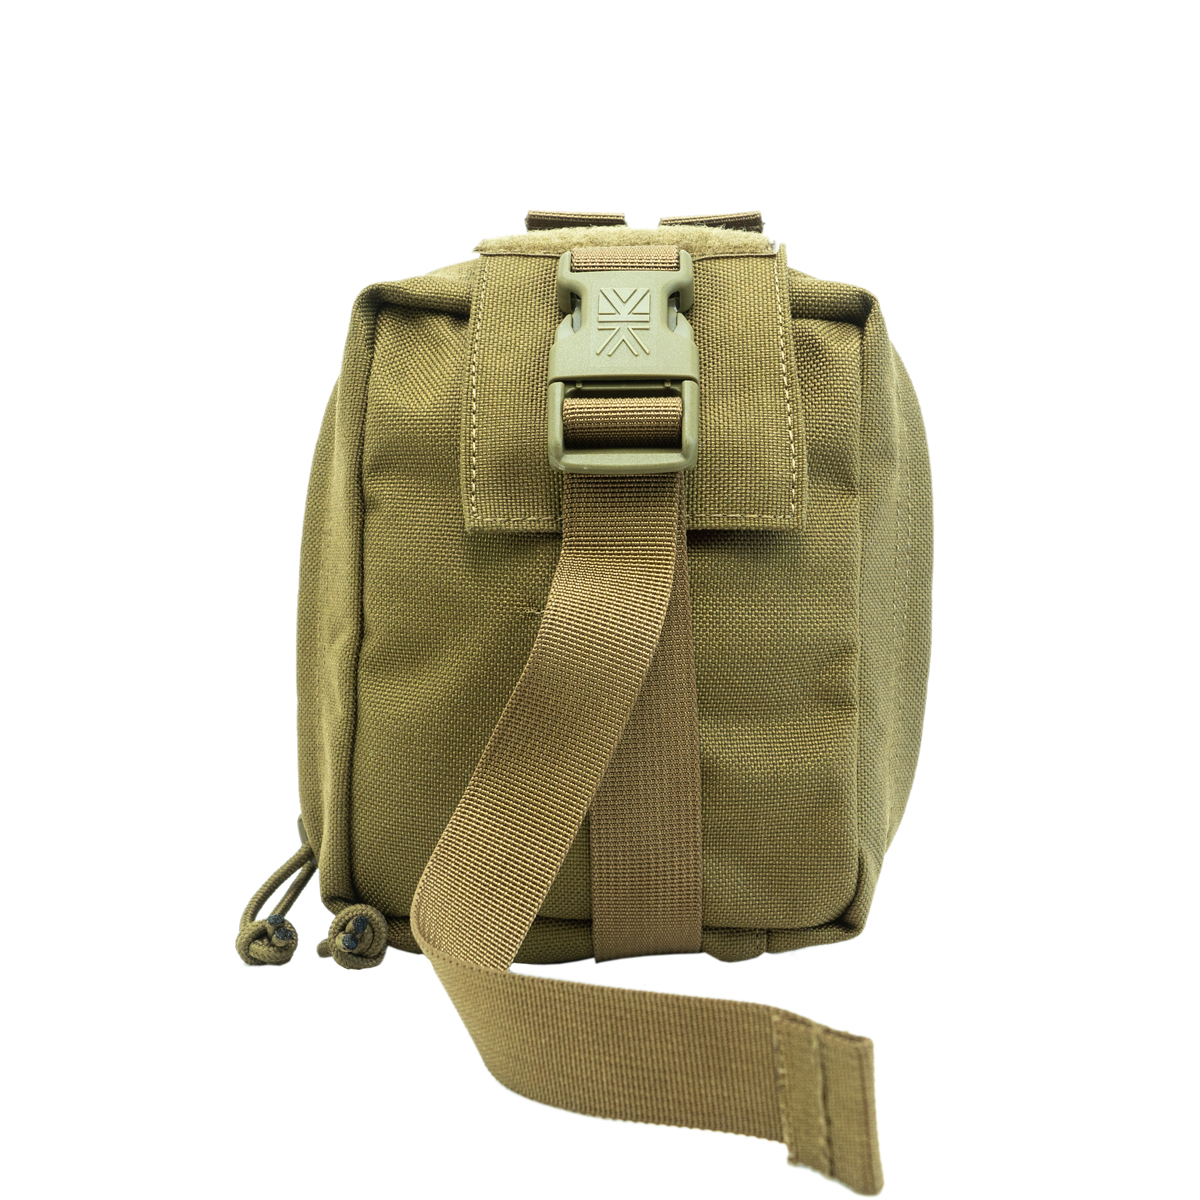 Kupite vrhunsko vojaško medicinsko torbico IA Medical QR Modular Karrimor SF na Opremljen.si. Ta večnamenska torbica je idealna za vojaško opremo in medicinske potrebe. Prenosna, taktična in učinkovita - prava izbira za vojsko in outdoor navdušence.